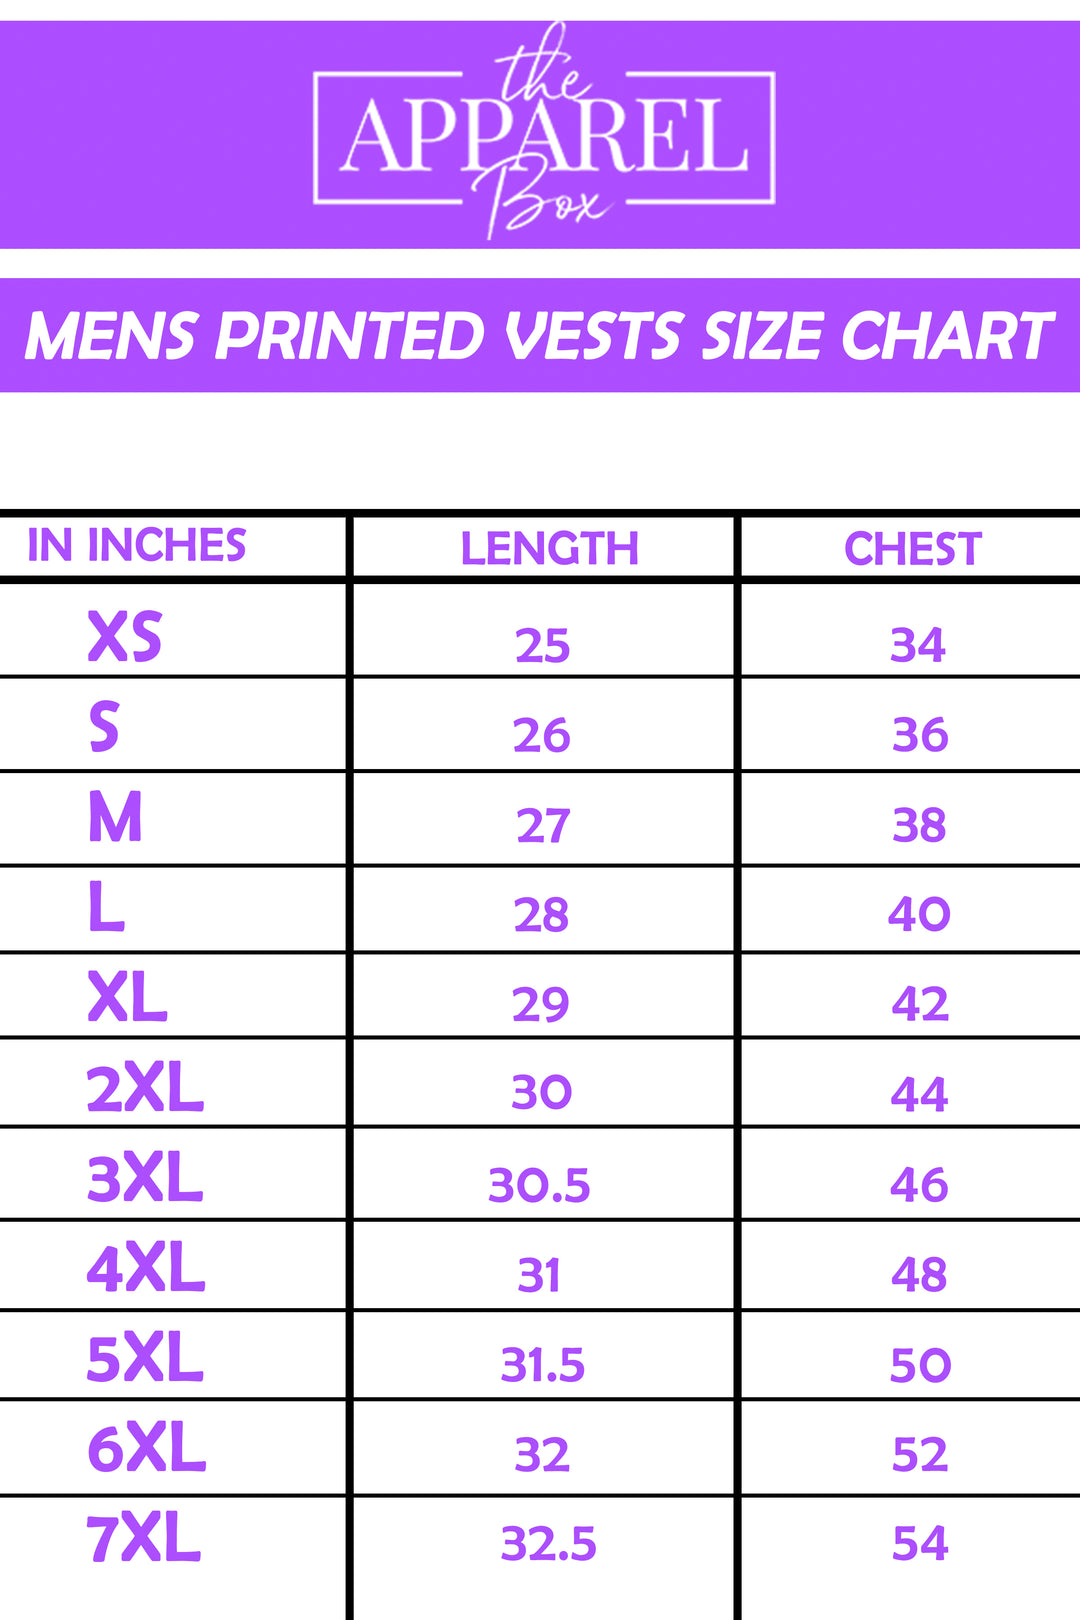 Printed Vest#14